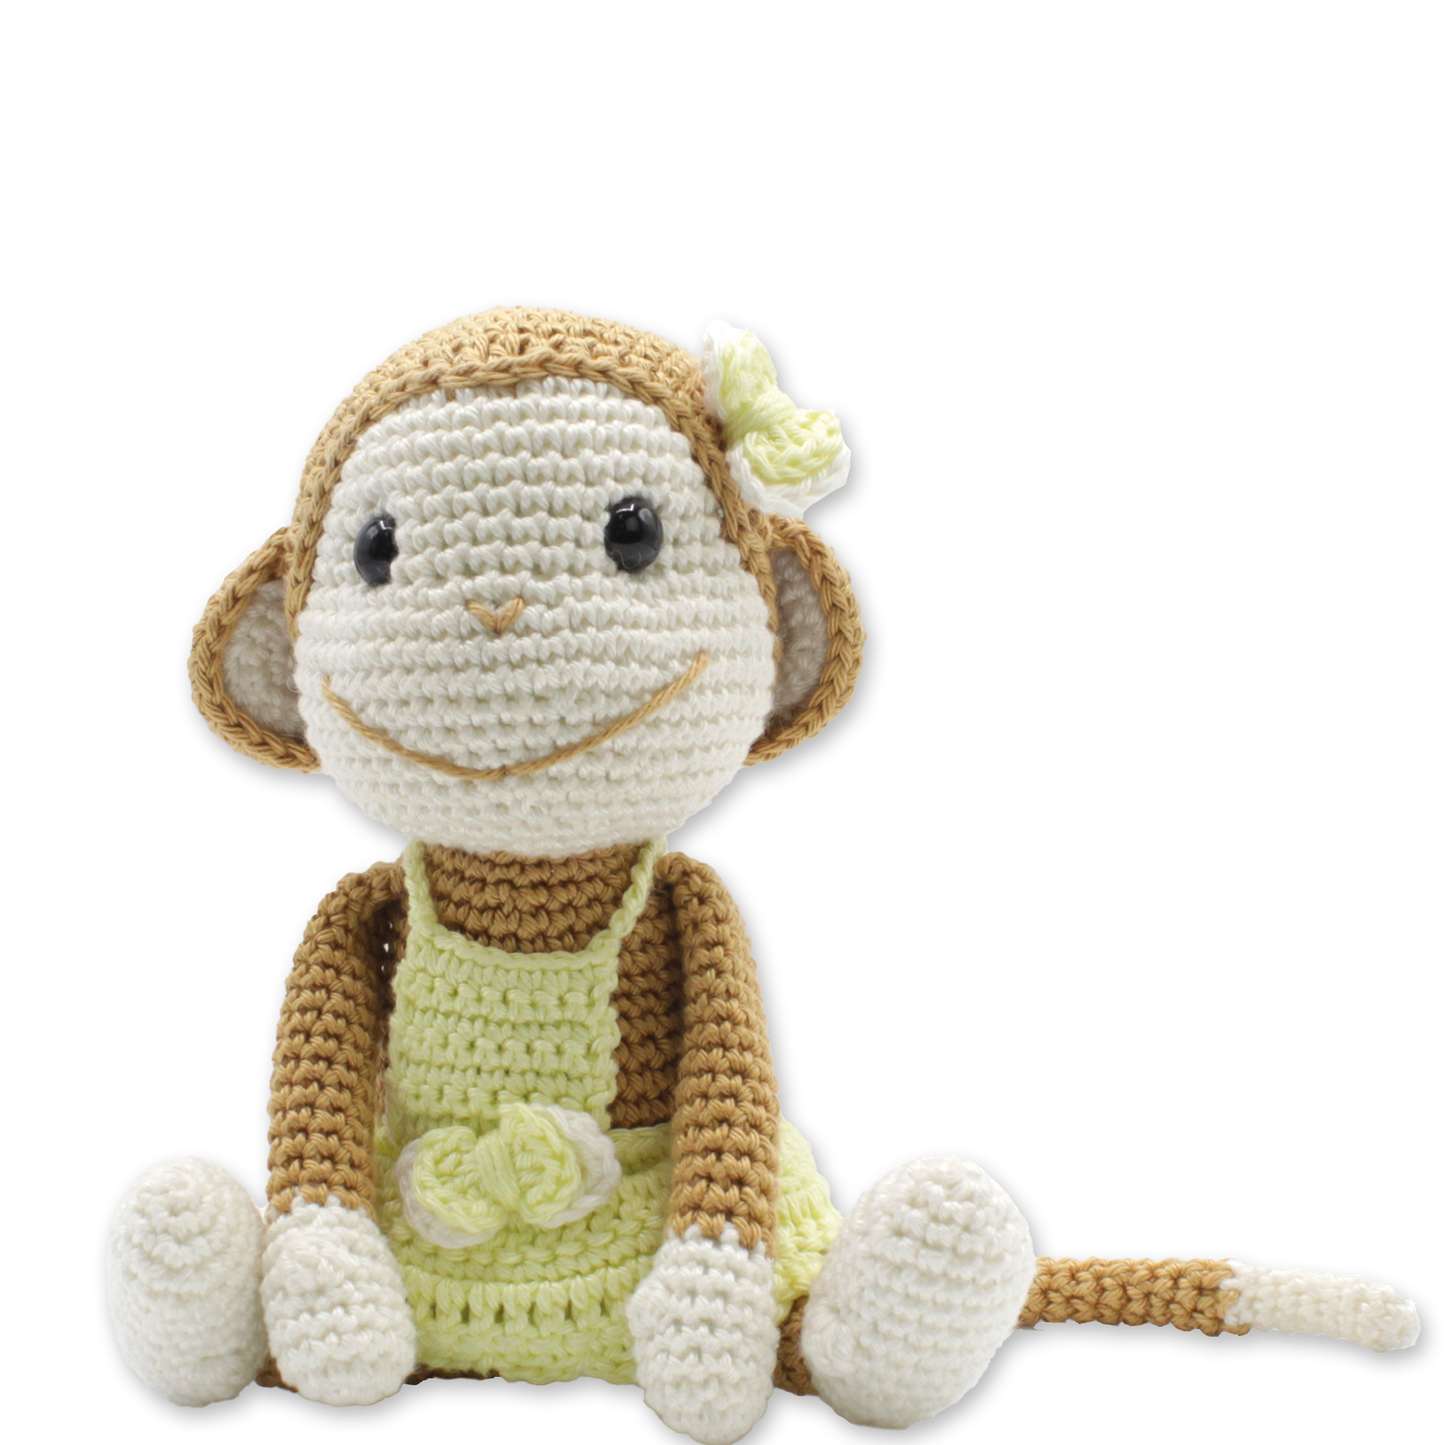 Nikki the Monkey Crochet Kit - by Hardicraft